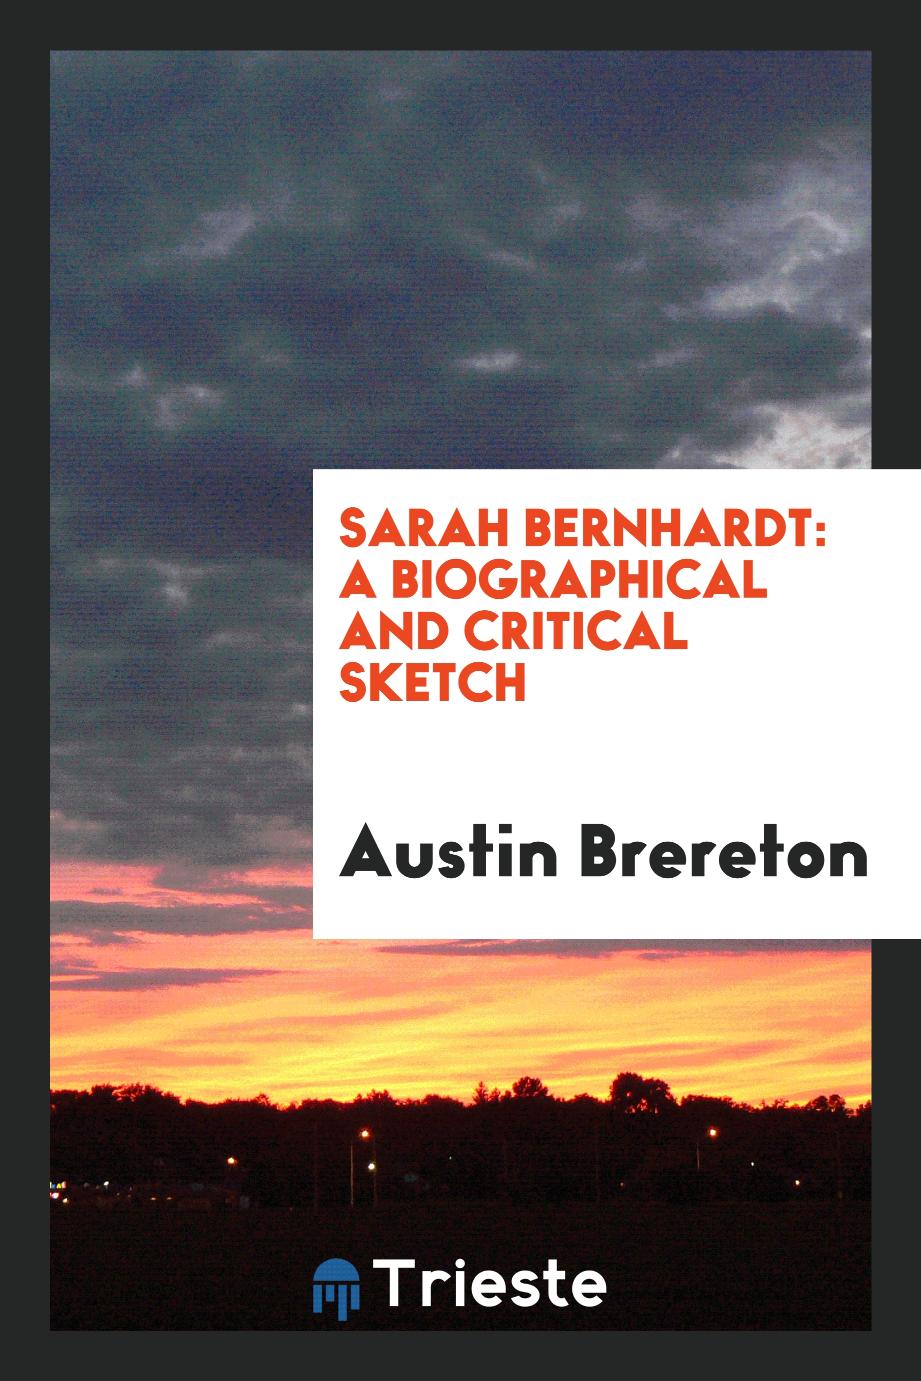 Sarah Bernhardt: A Biographical and Critical Sketch